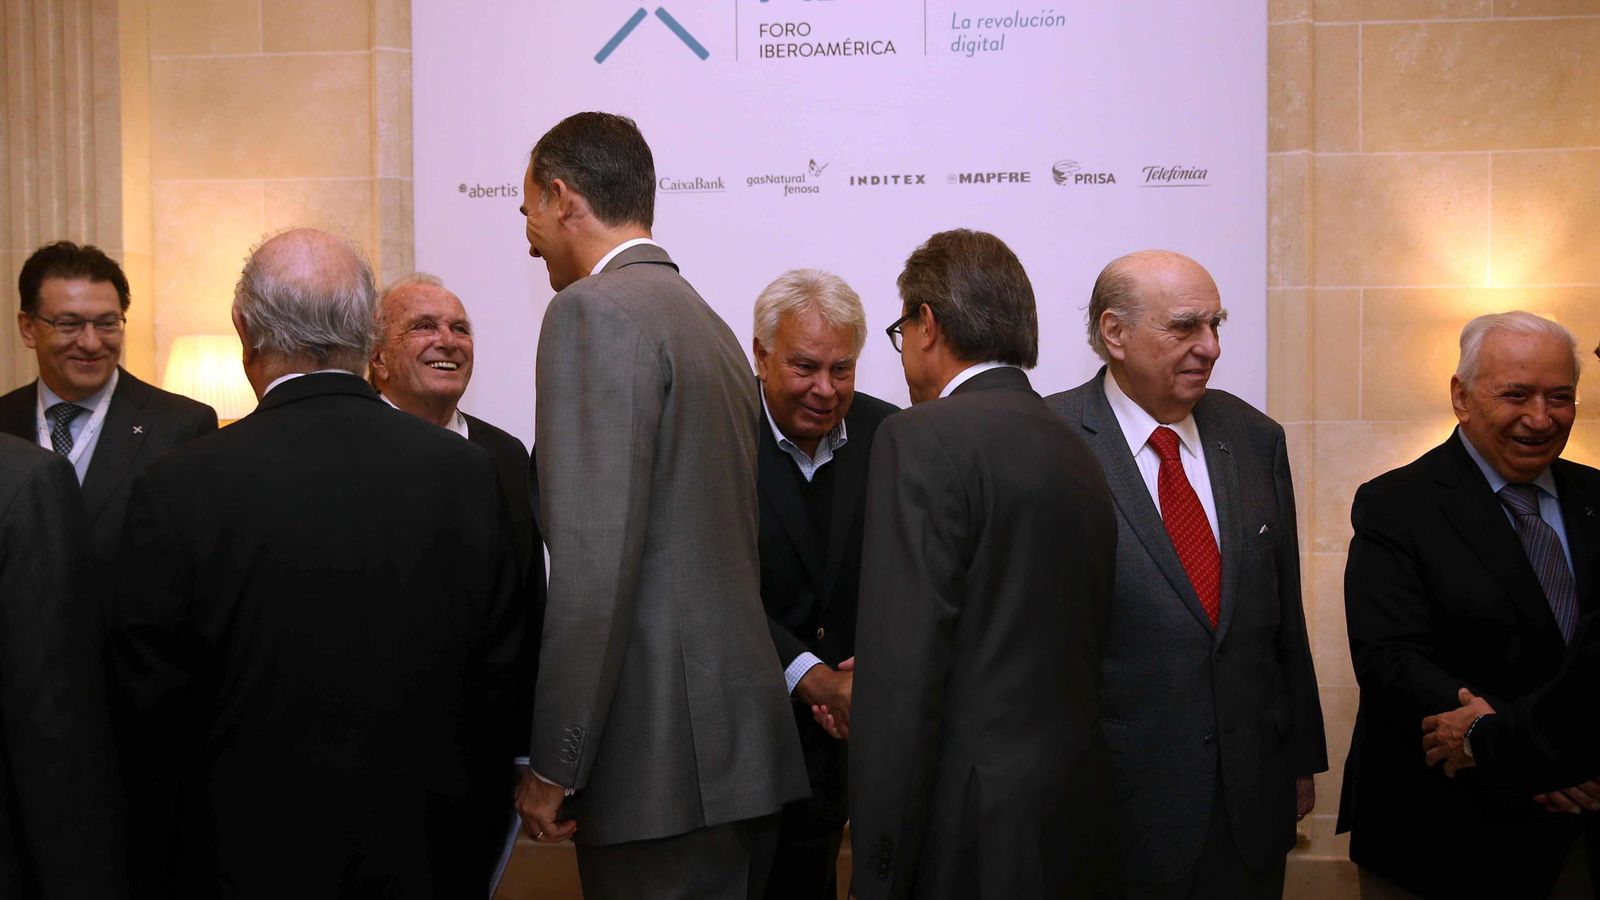 Foto: El Rey Felipe VI, acompañado por el presidente de la Generalitat, Artur Mas (3d, de espaldas), saludan a los participantes al Foro Iberoamérica. (EFE)